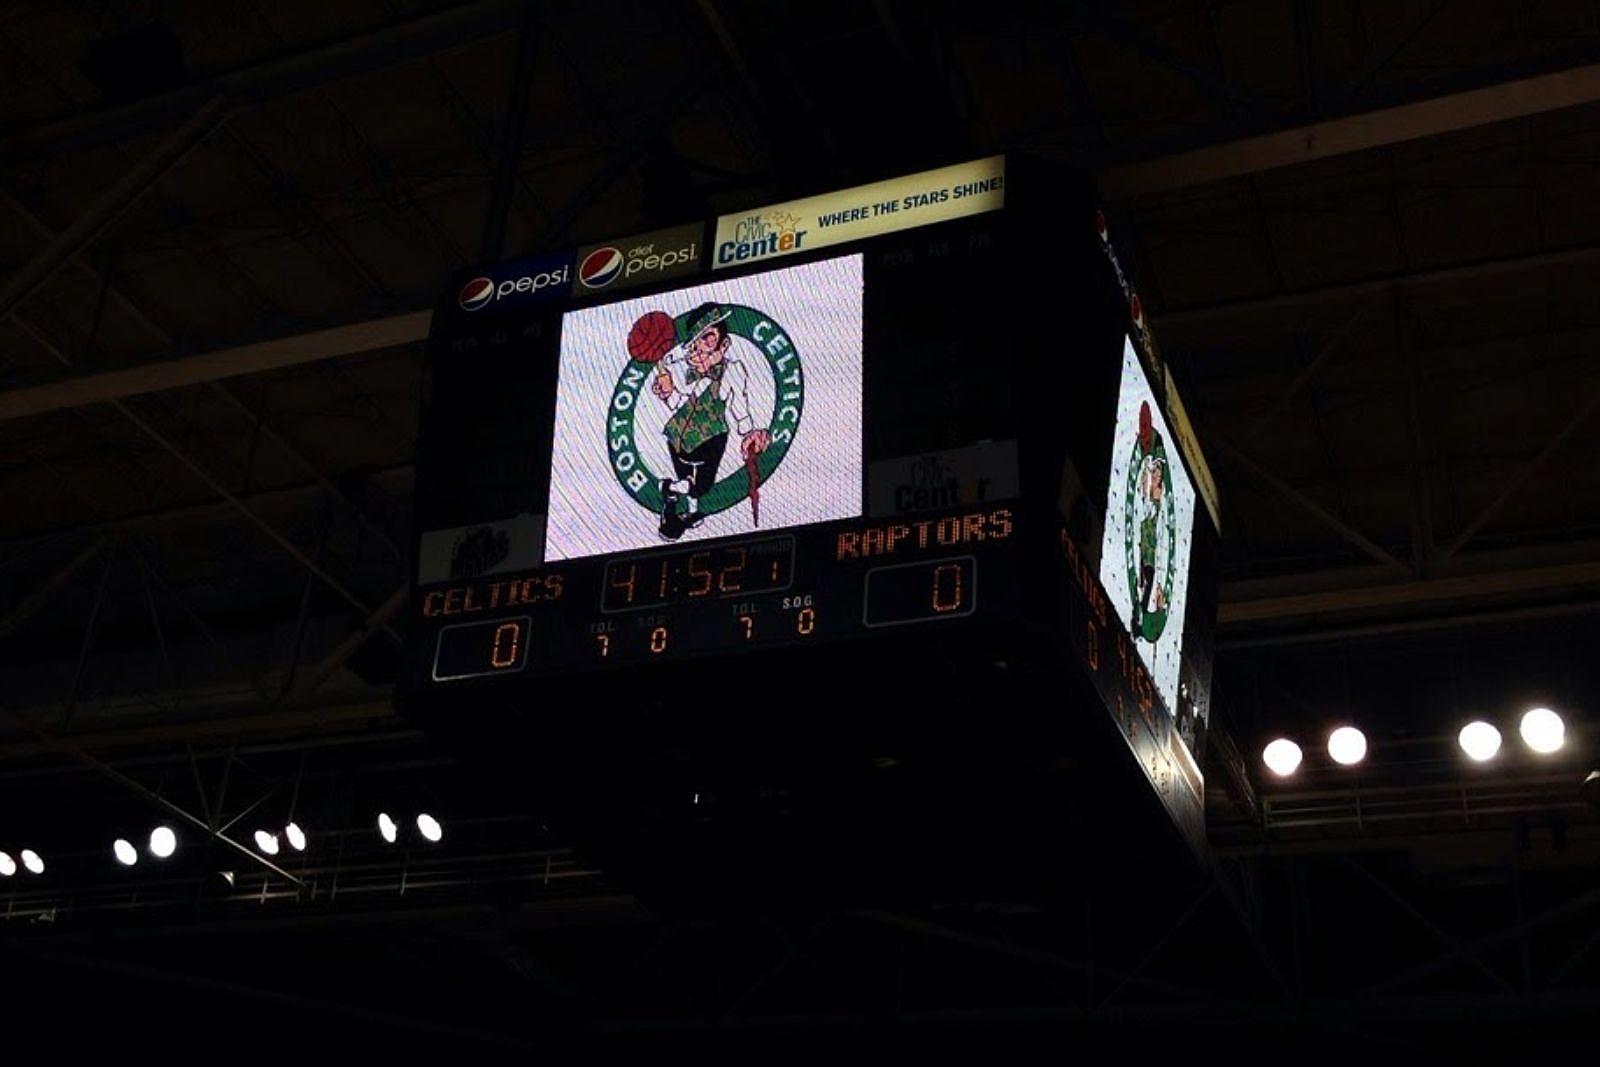 Home - Maine Celtics